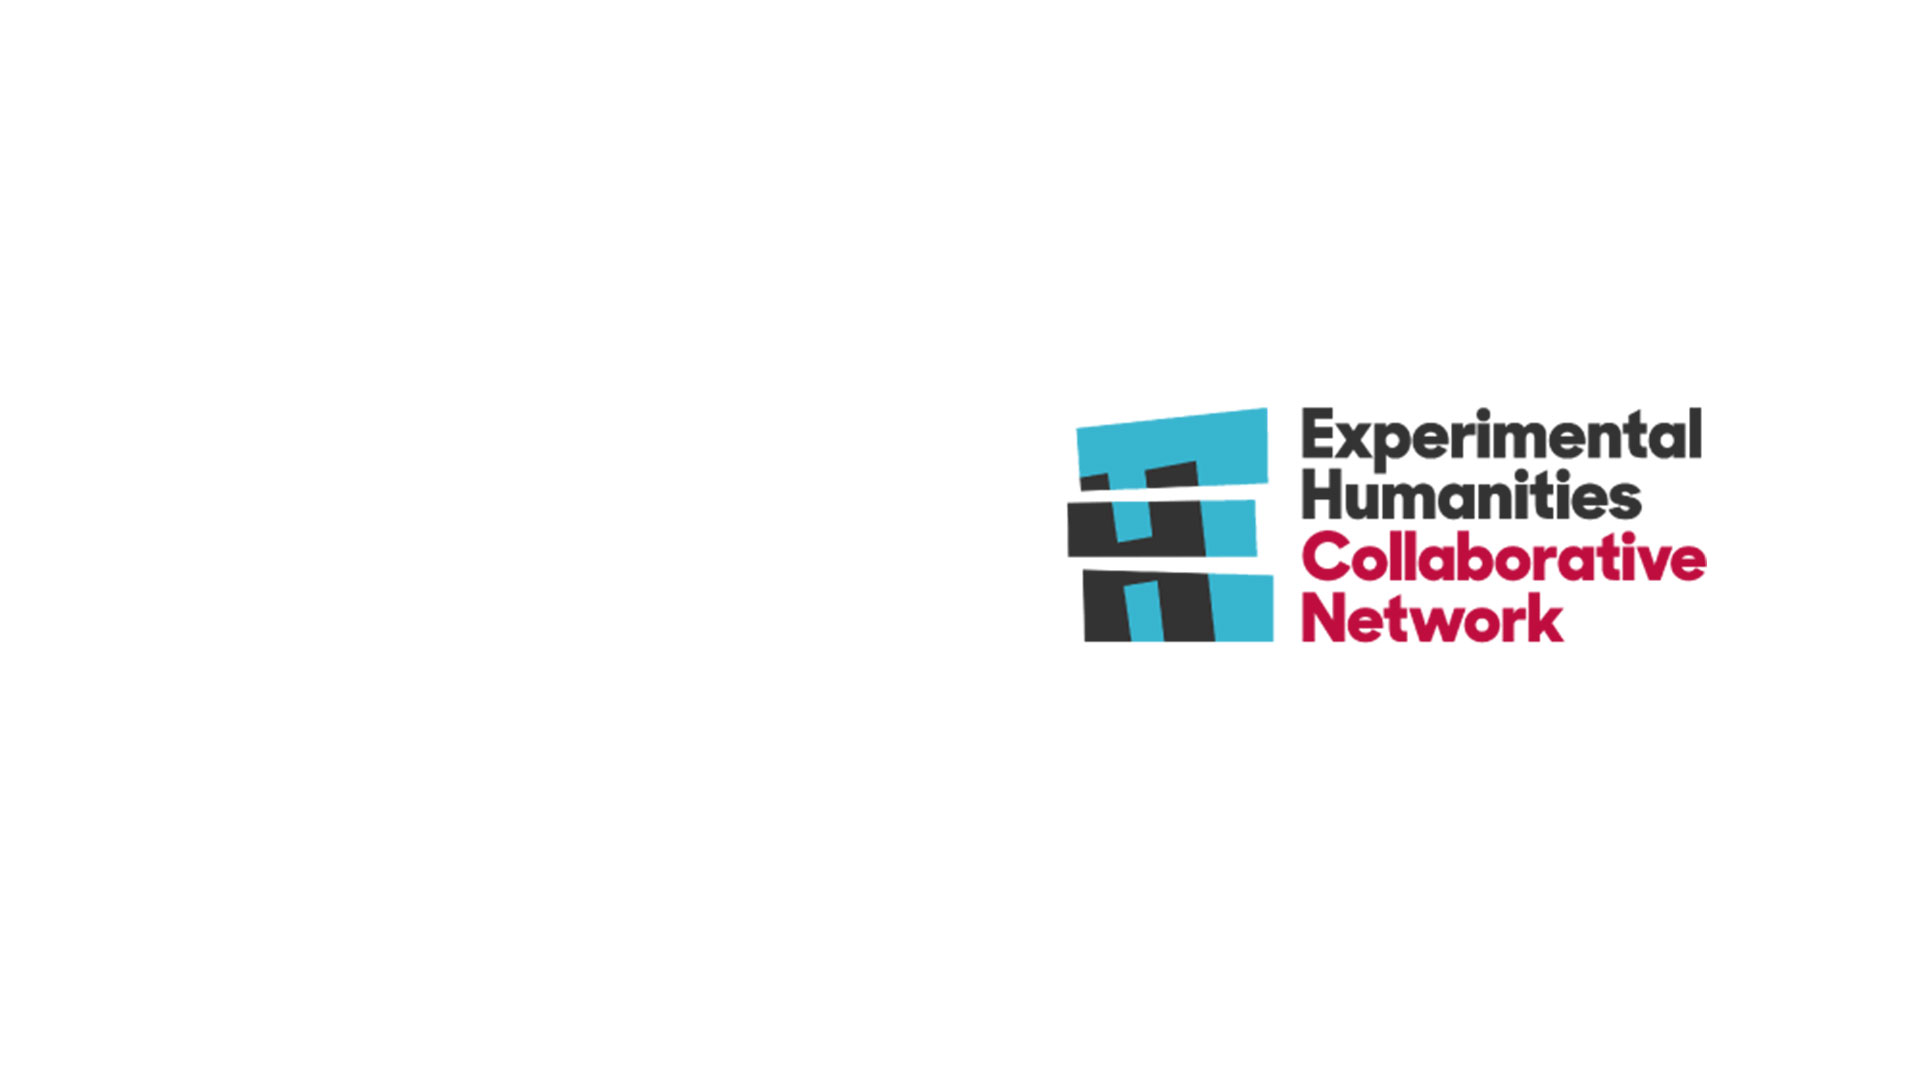 Convocatoria Extendida. Experimental Humanities Collaborative Network – Convocatoria interna Uniandes